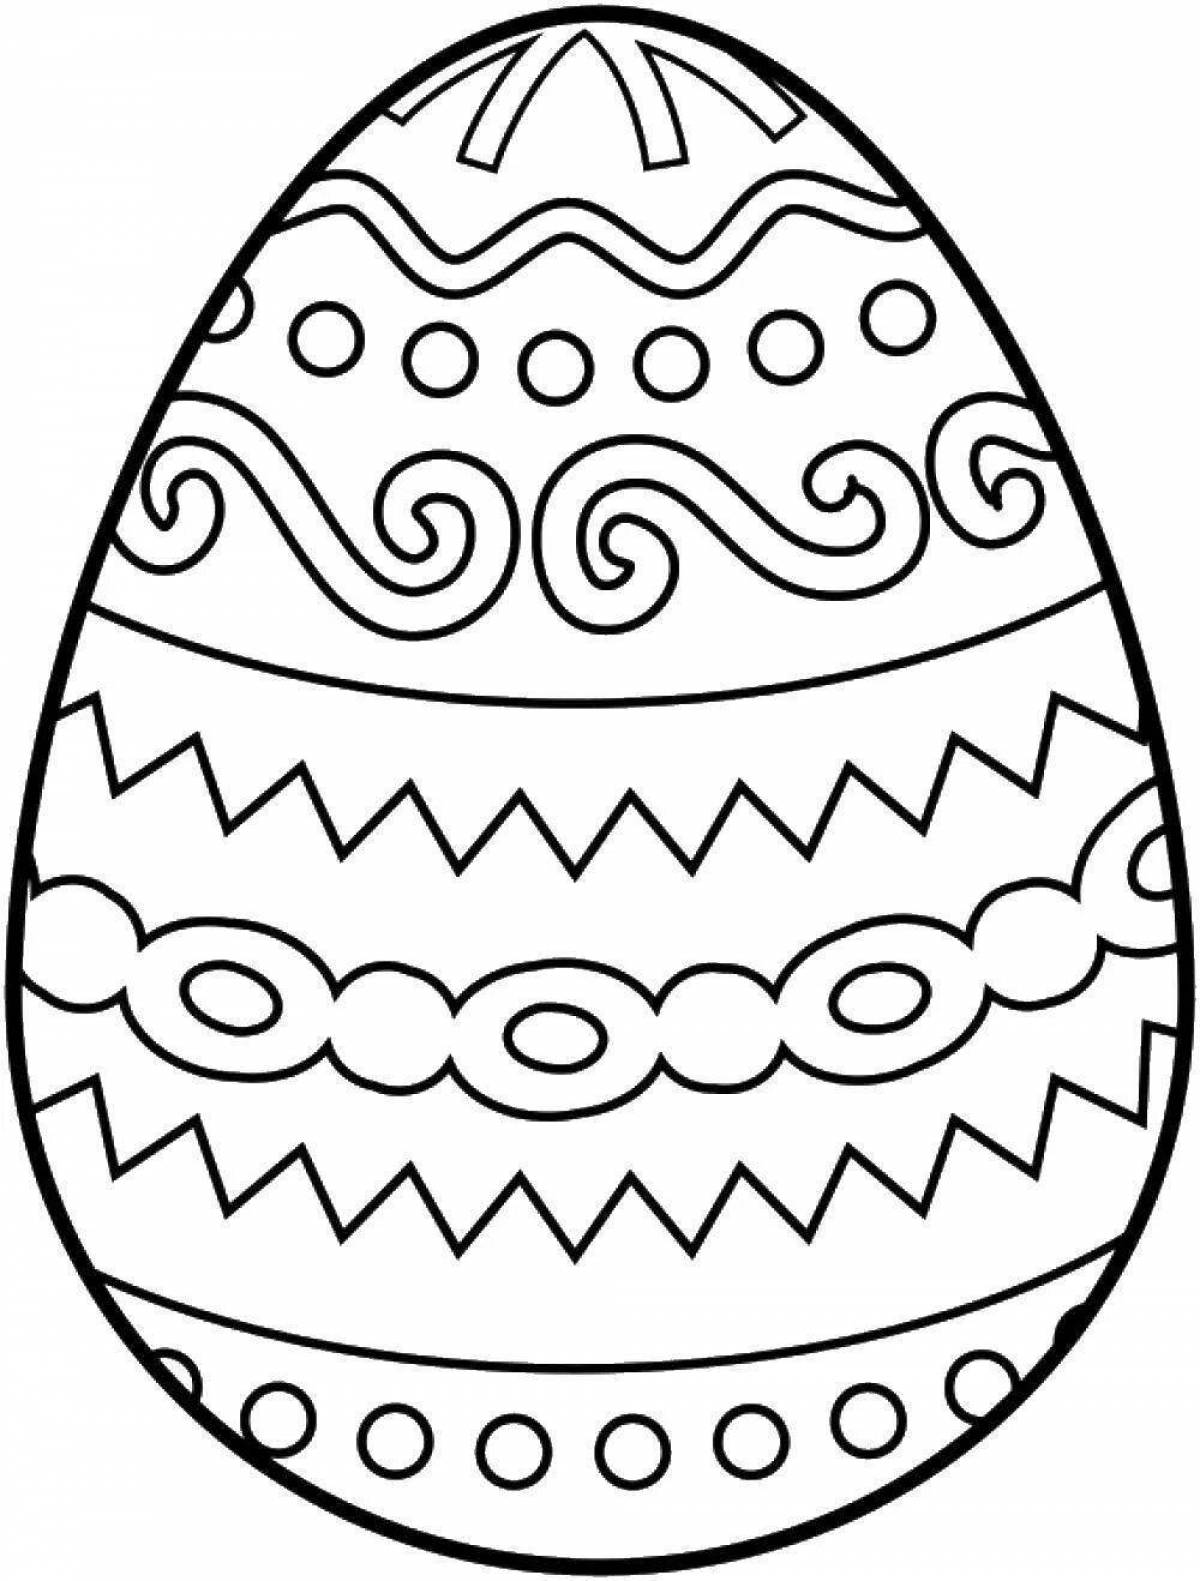 Раскрашиваем пасхальные. Пасхальное яйцо раскраска. Яйца на Пасху раскраска. Пасхальное яйцо раскраска для детей. Пасхальное яичко раскраска.